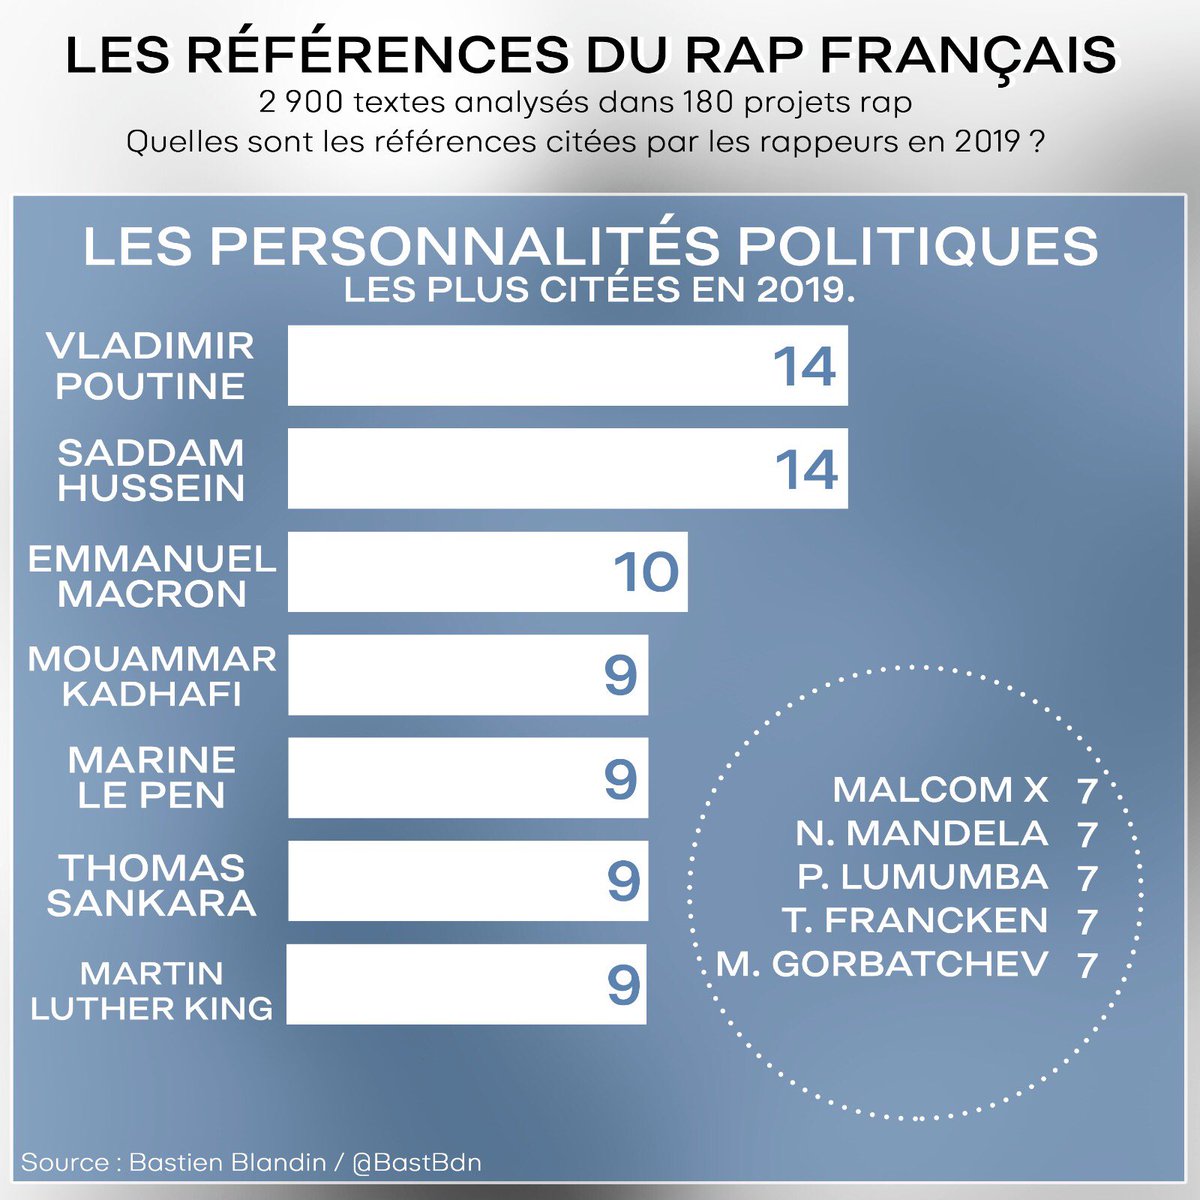 LES POLITIQUESLa géopolitique est un thème qui intéresse également le rap français.Des politiques sont cités. Parfois pour les honorer (Luther King, Malcolm X, Sankara), parfois pour les critiquer (Khadafi, Le Pen).